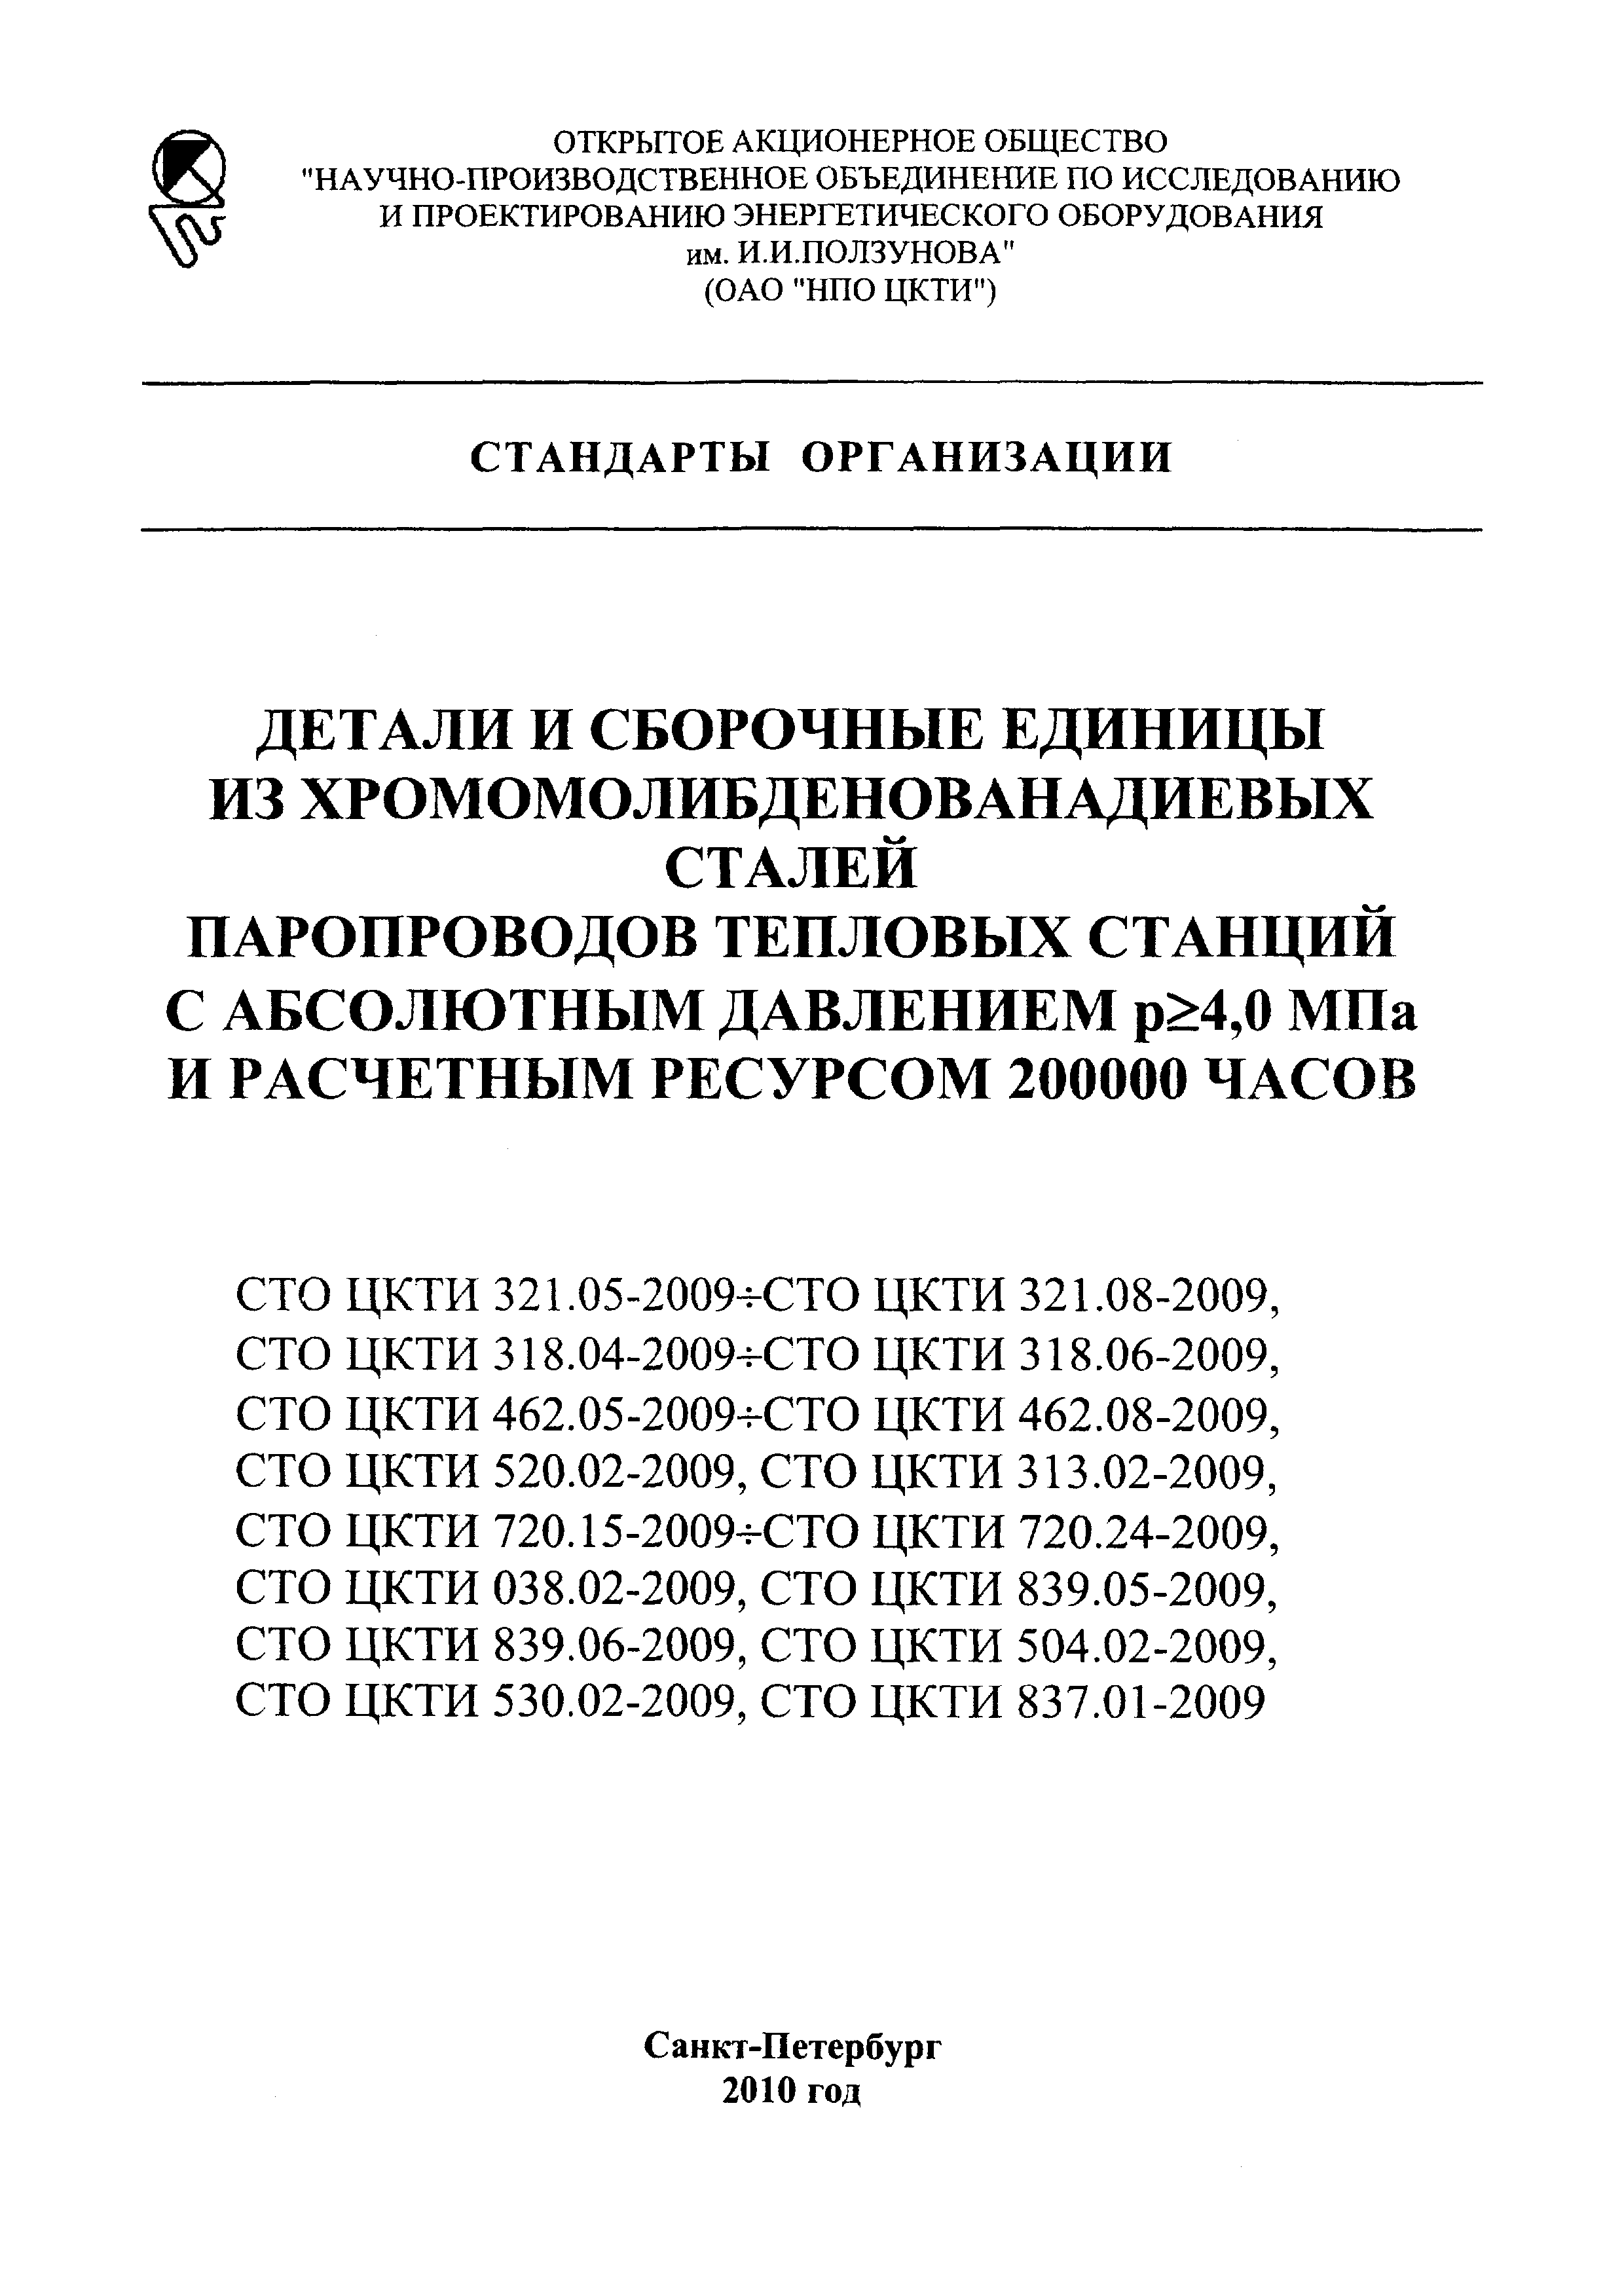 СТО ЦКТИ 720.24-2009